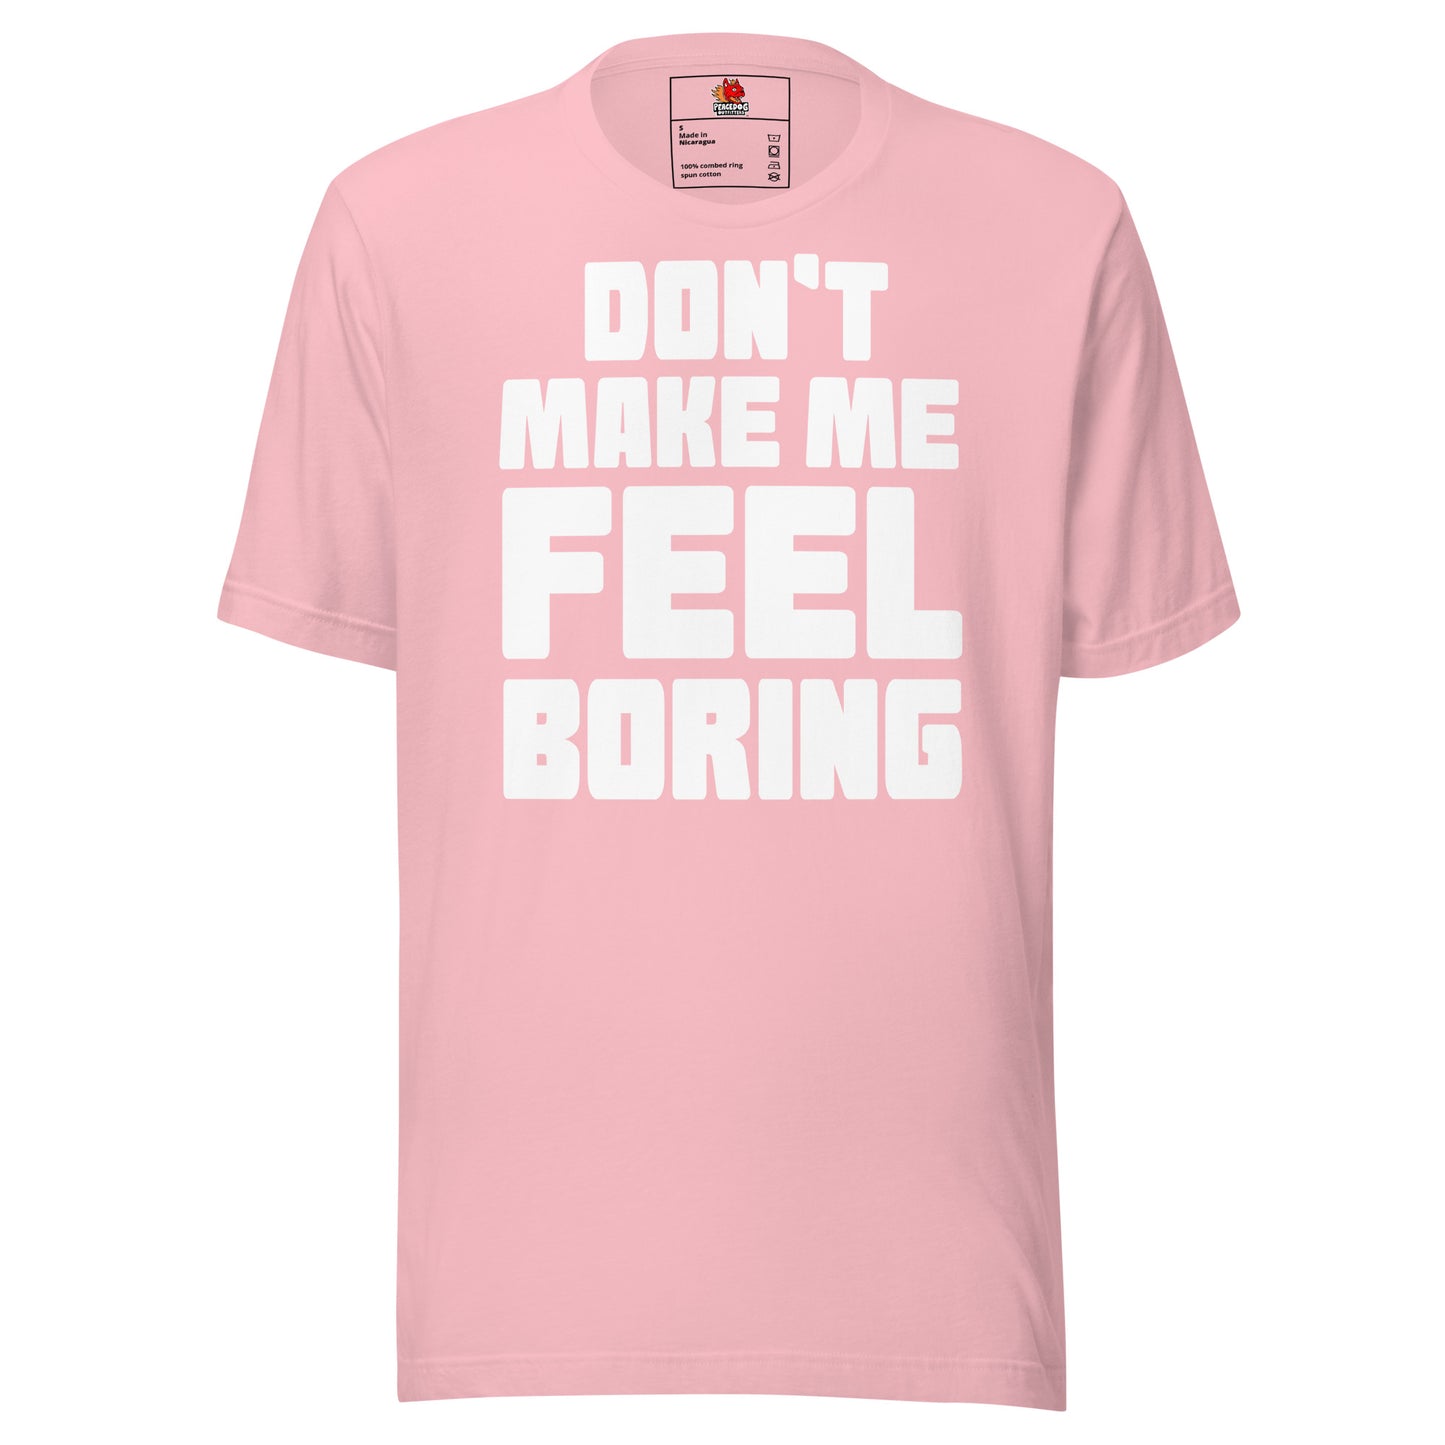 Don't Make Me Feel Boring T-shirt